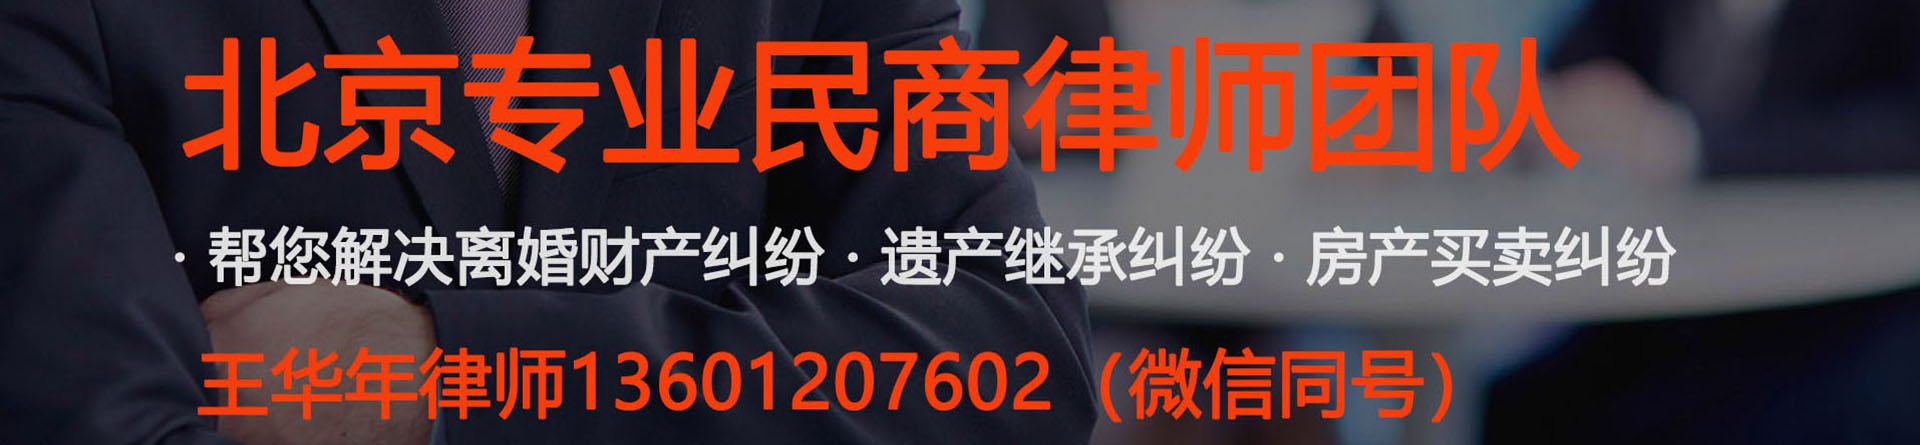 常营律师事务所免费咨询-北京朝阳常营附近的律师事务所地址电话